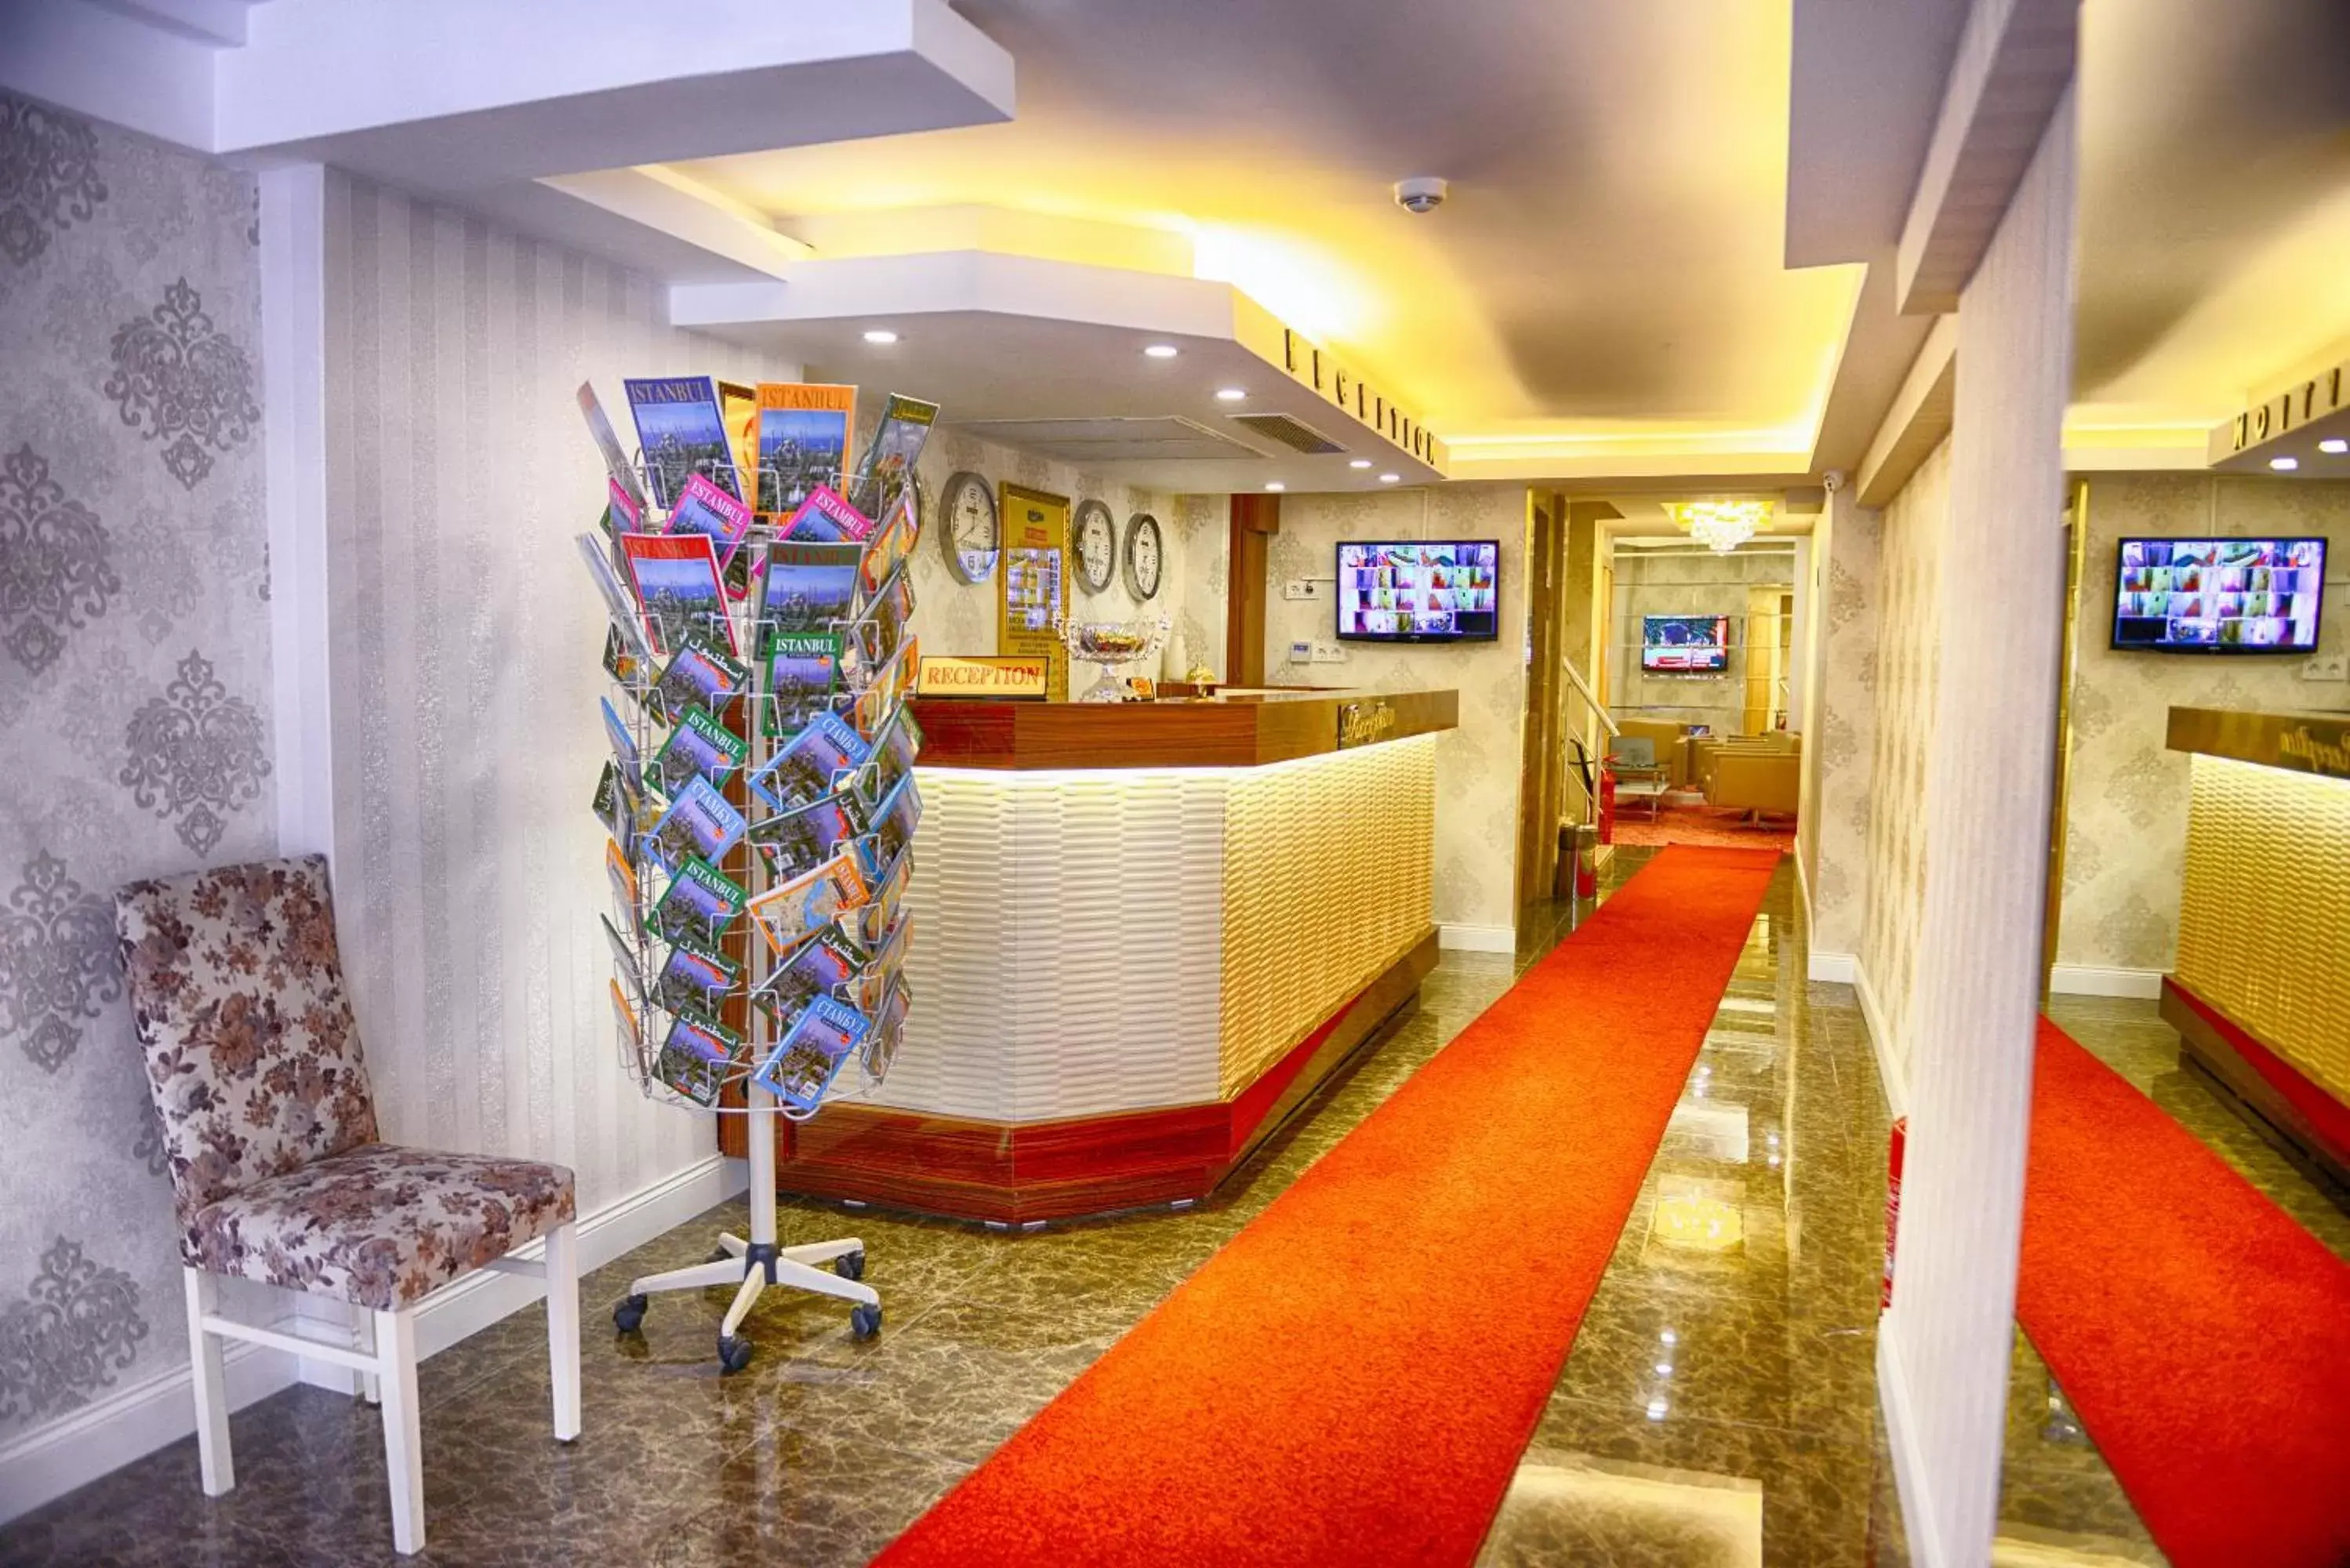 Lobby or reception, Lobby/Reception in Florenta Hotel